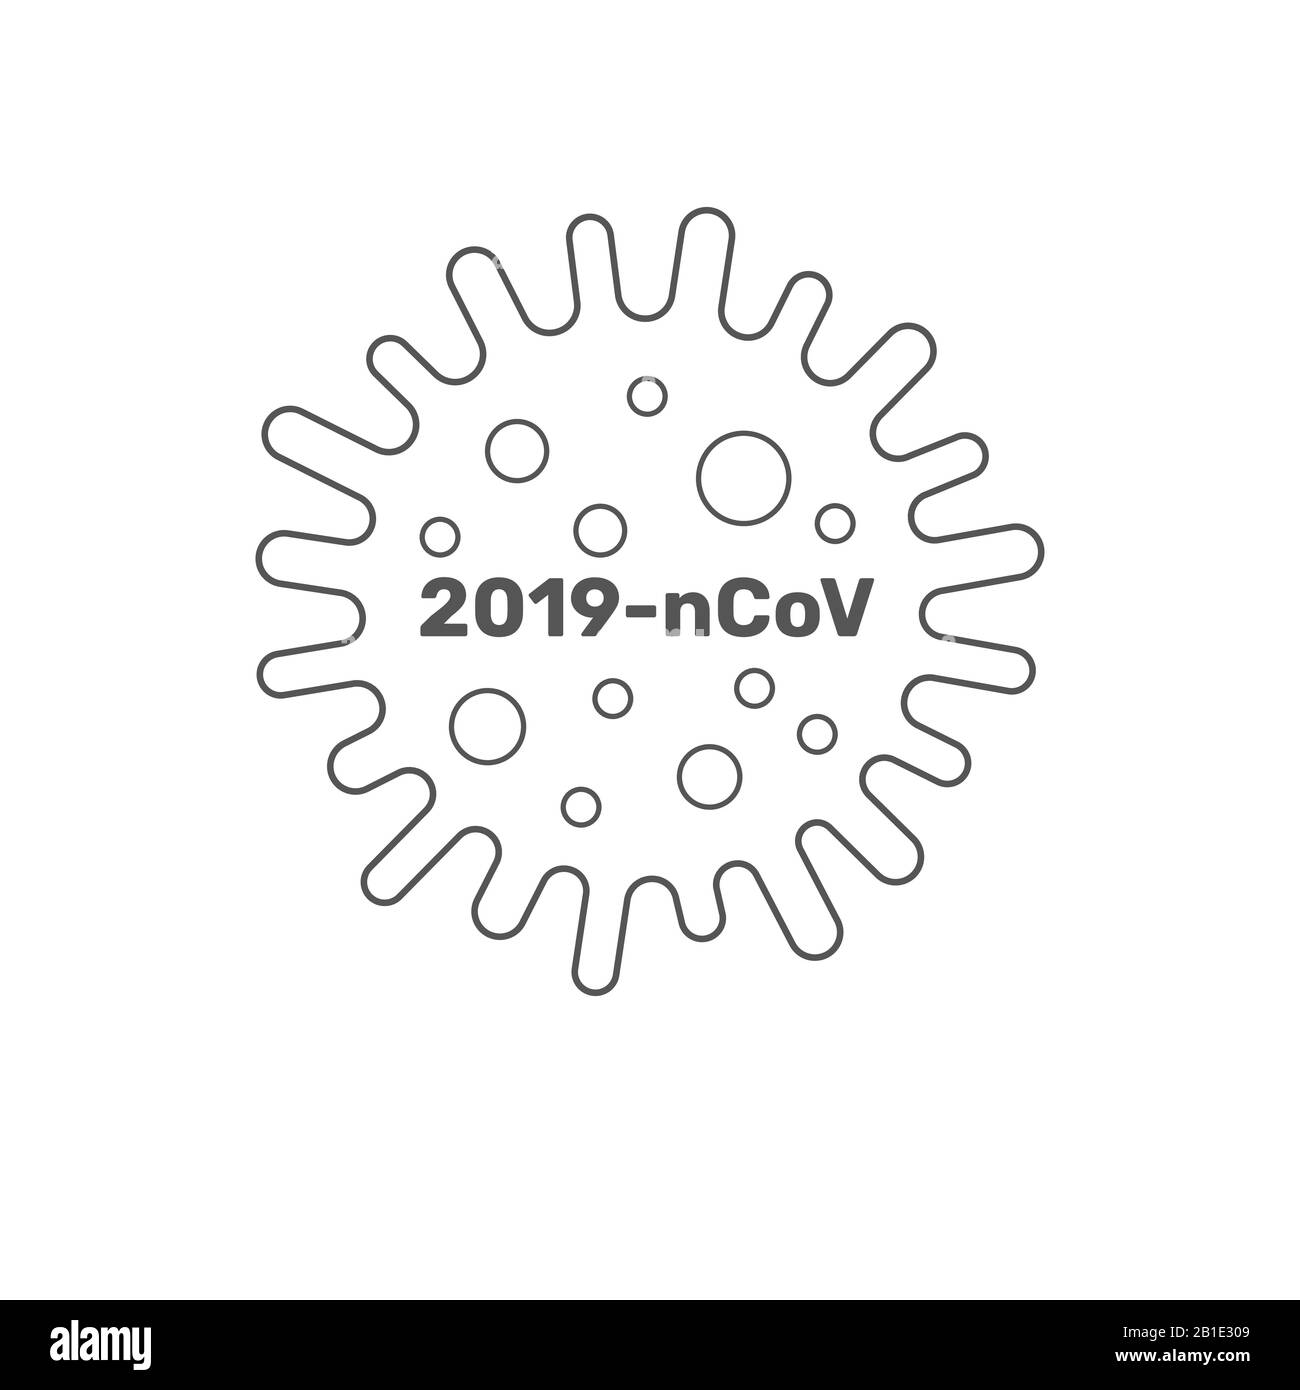 Coronavirus Cell, 2019-nCoV. China Pathogen respiratorisches Coronavirus 2019-nCoV in einer Welt, Gefährliches chinesisches nCoV Coronavirus, SARS Pandemie-Risiko-Alarm Stock Vektor